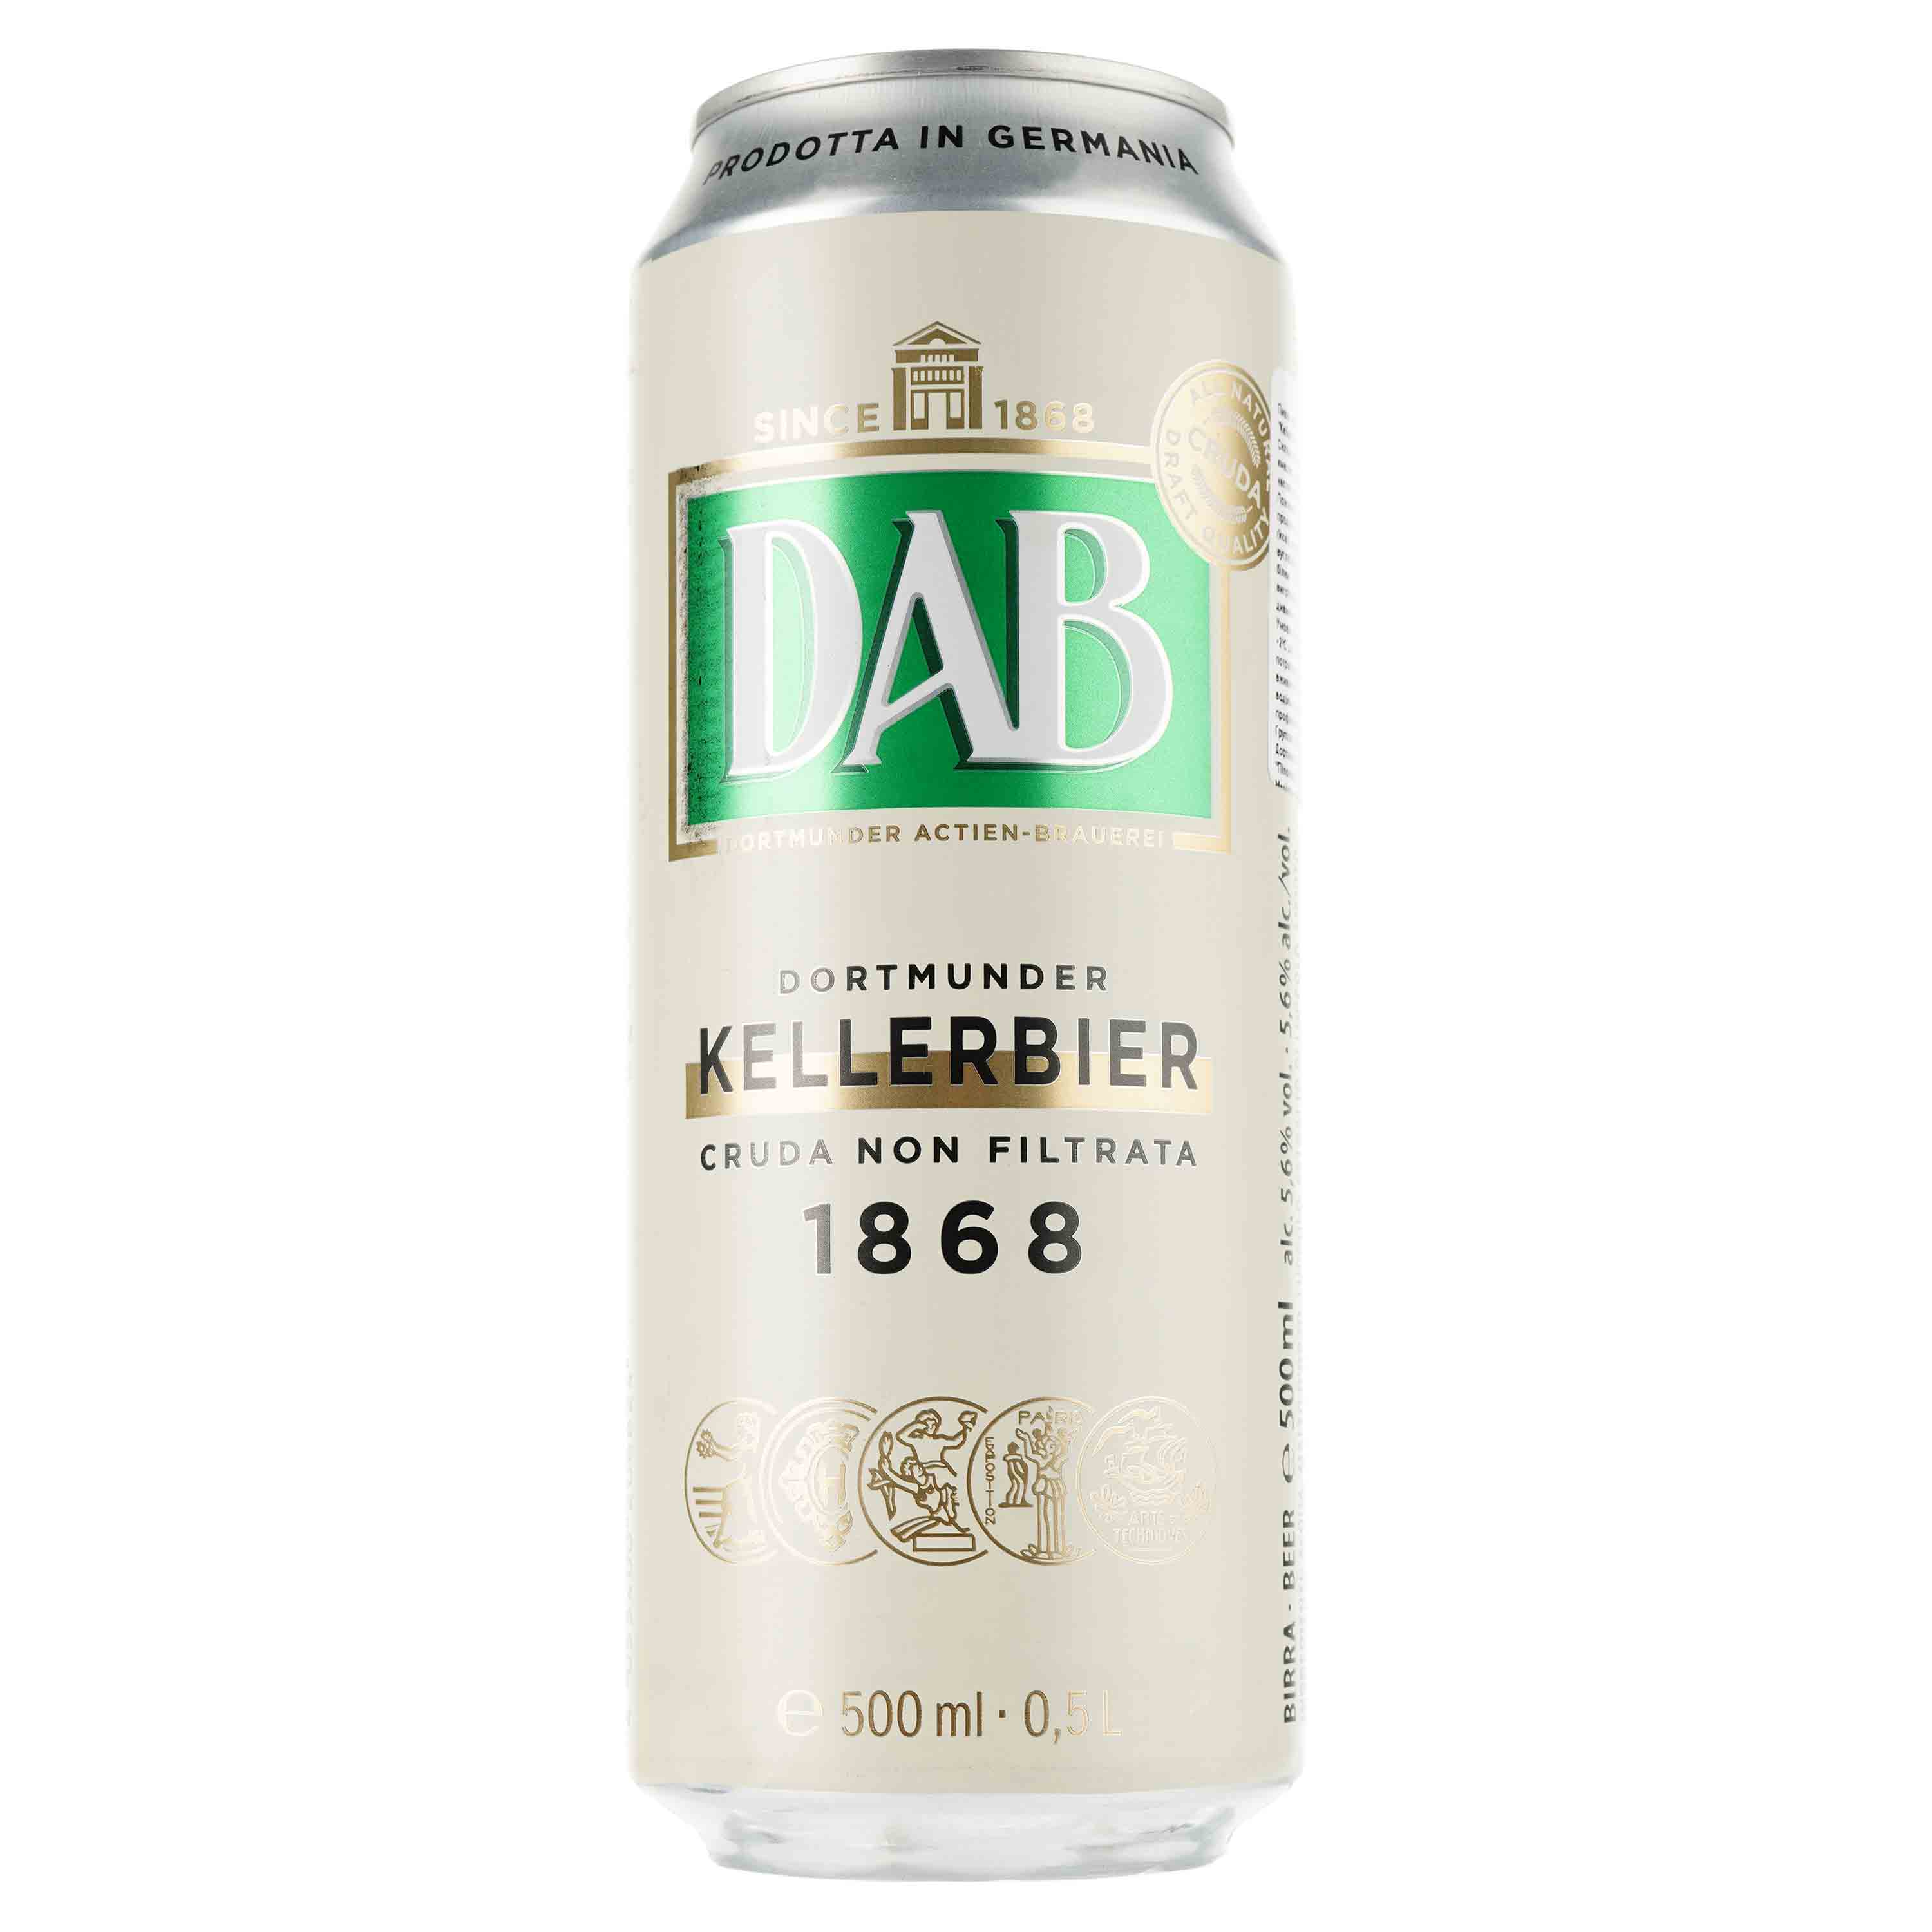 Пиво DAB Kellerbier светлое, 5.6%, ж/б, 0.5 л - фото 1